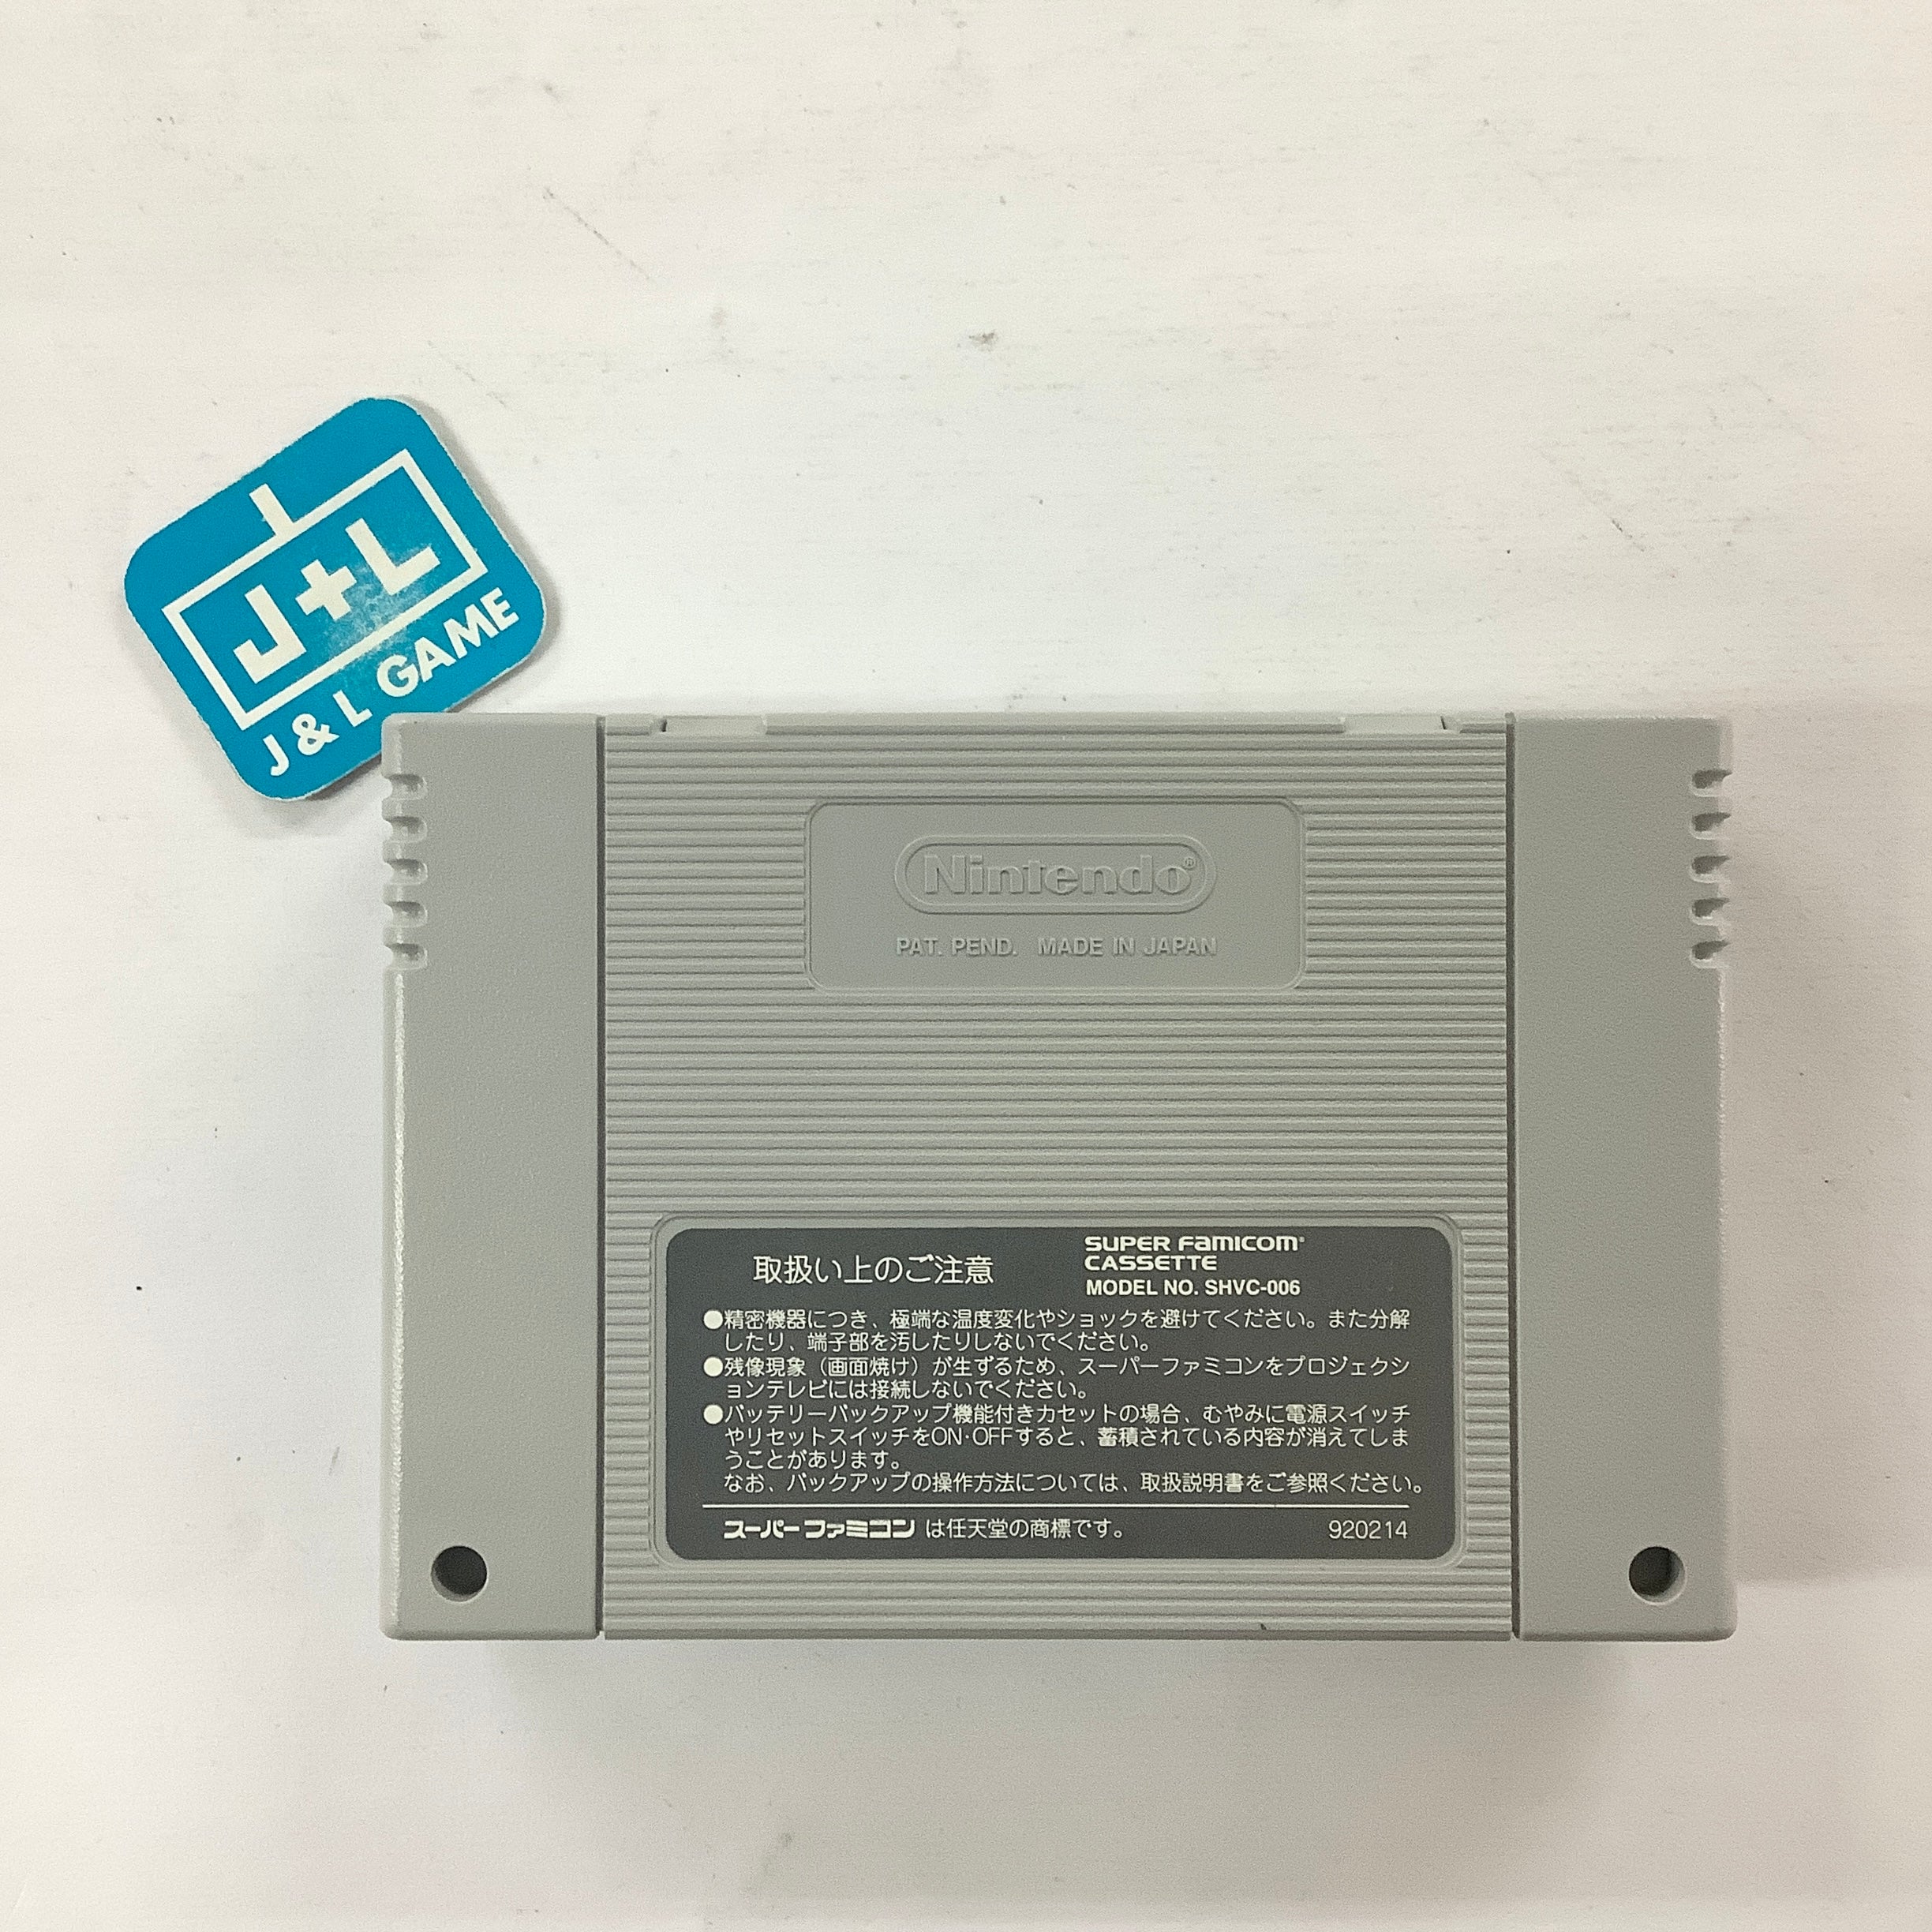 Garou Densetsu 2 - (SFC) Super Famicom [Pre-Owned] (Japanese Import) Video Games Takara   